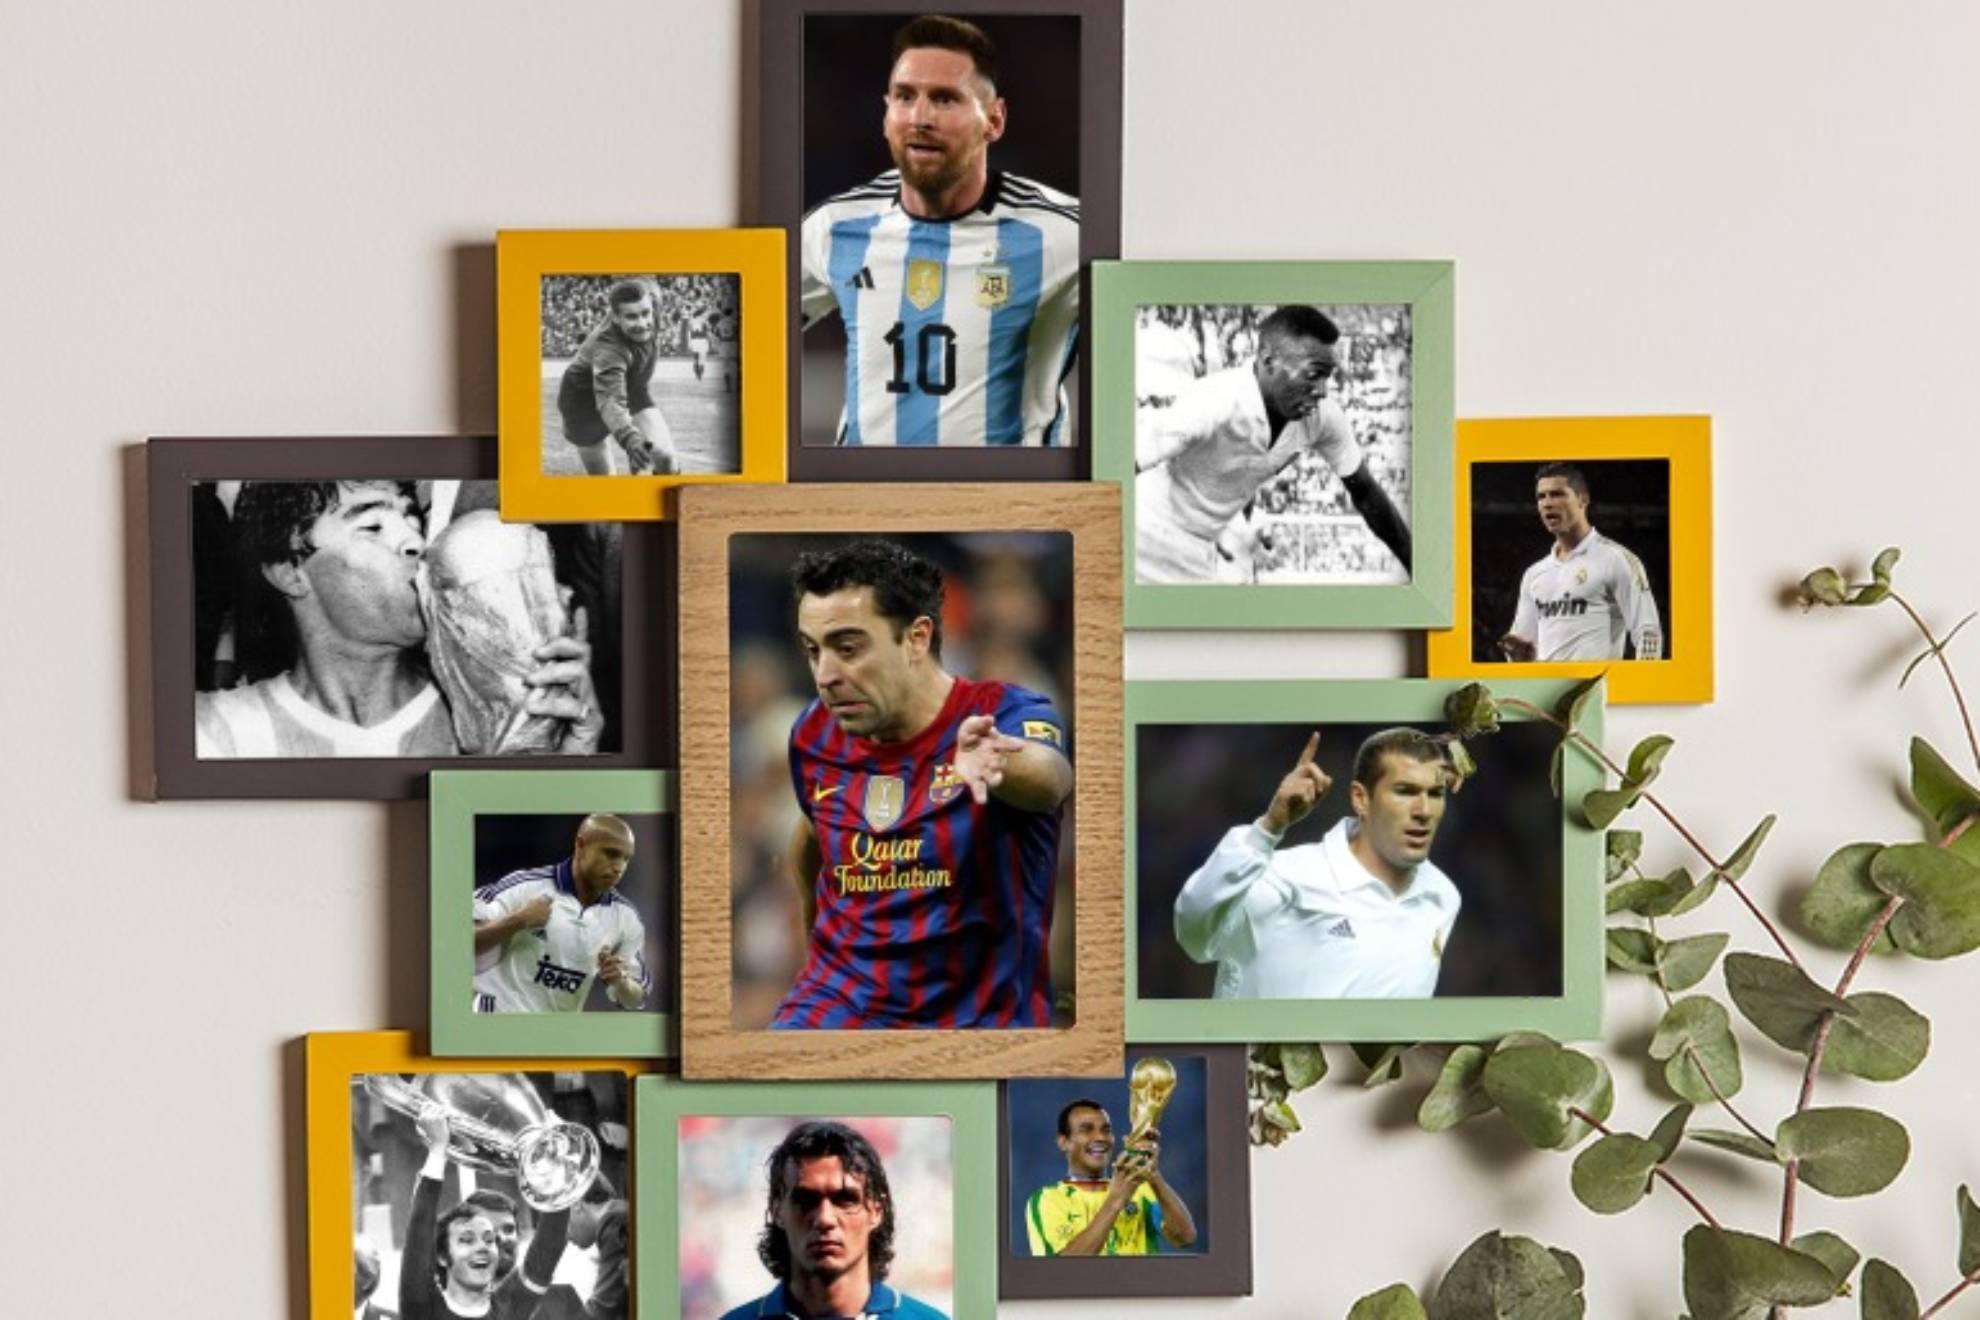 El mejor 11 de la historia del f�tbol, seg�n la Inteligencia Artificial, estar�a formado por Lev Yashin; Caf�, Paolo Maldini, Franz Beckenbauer y Roberto Carlos; Zinedine Zidane, Xavi Hern�ndez y Maradona; Cristiano Ronaldo, Pel� y Messi.